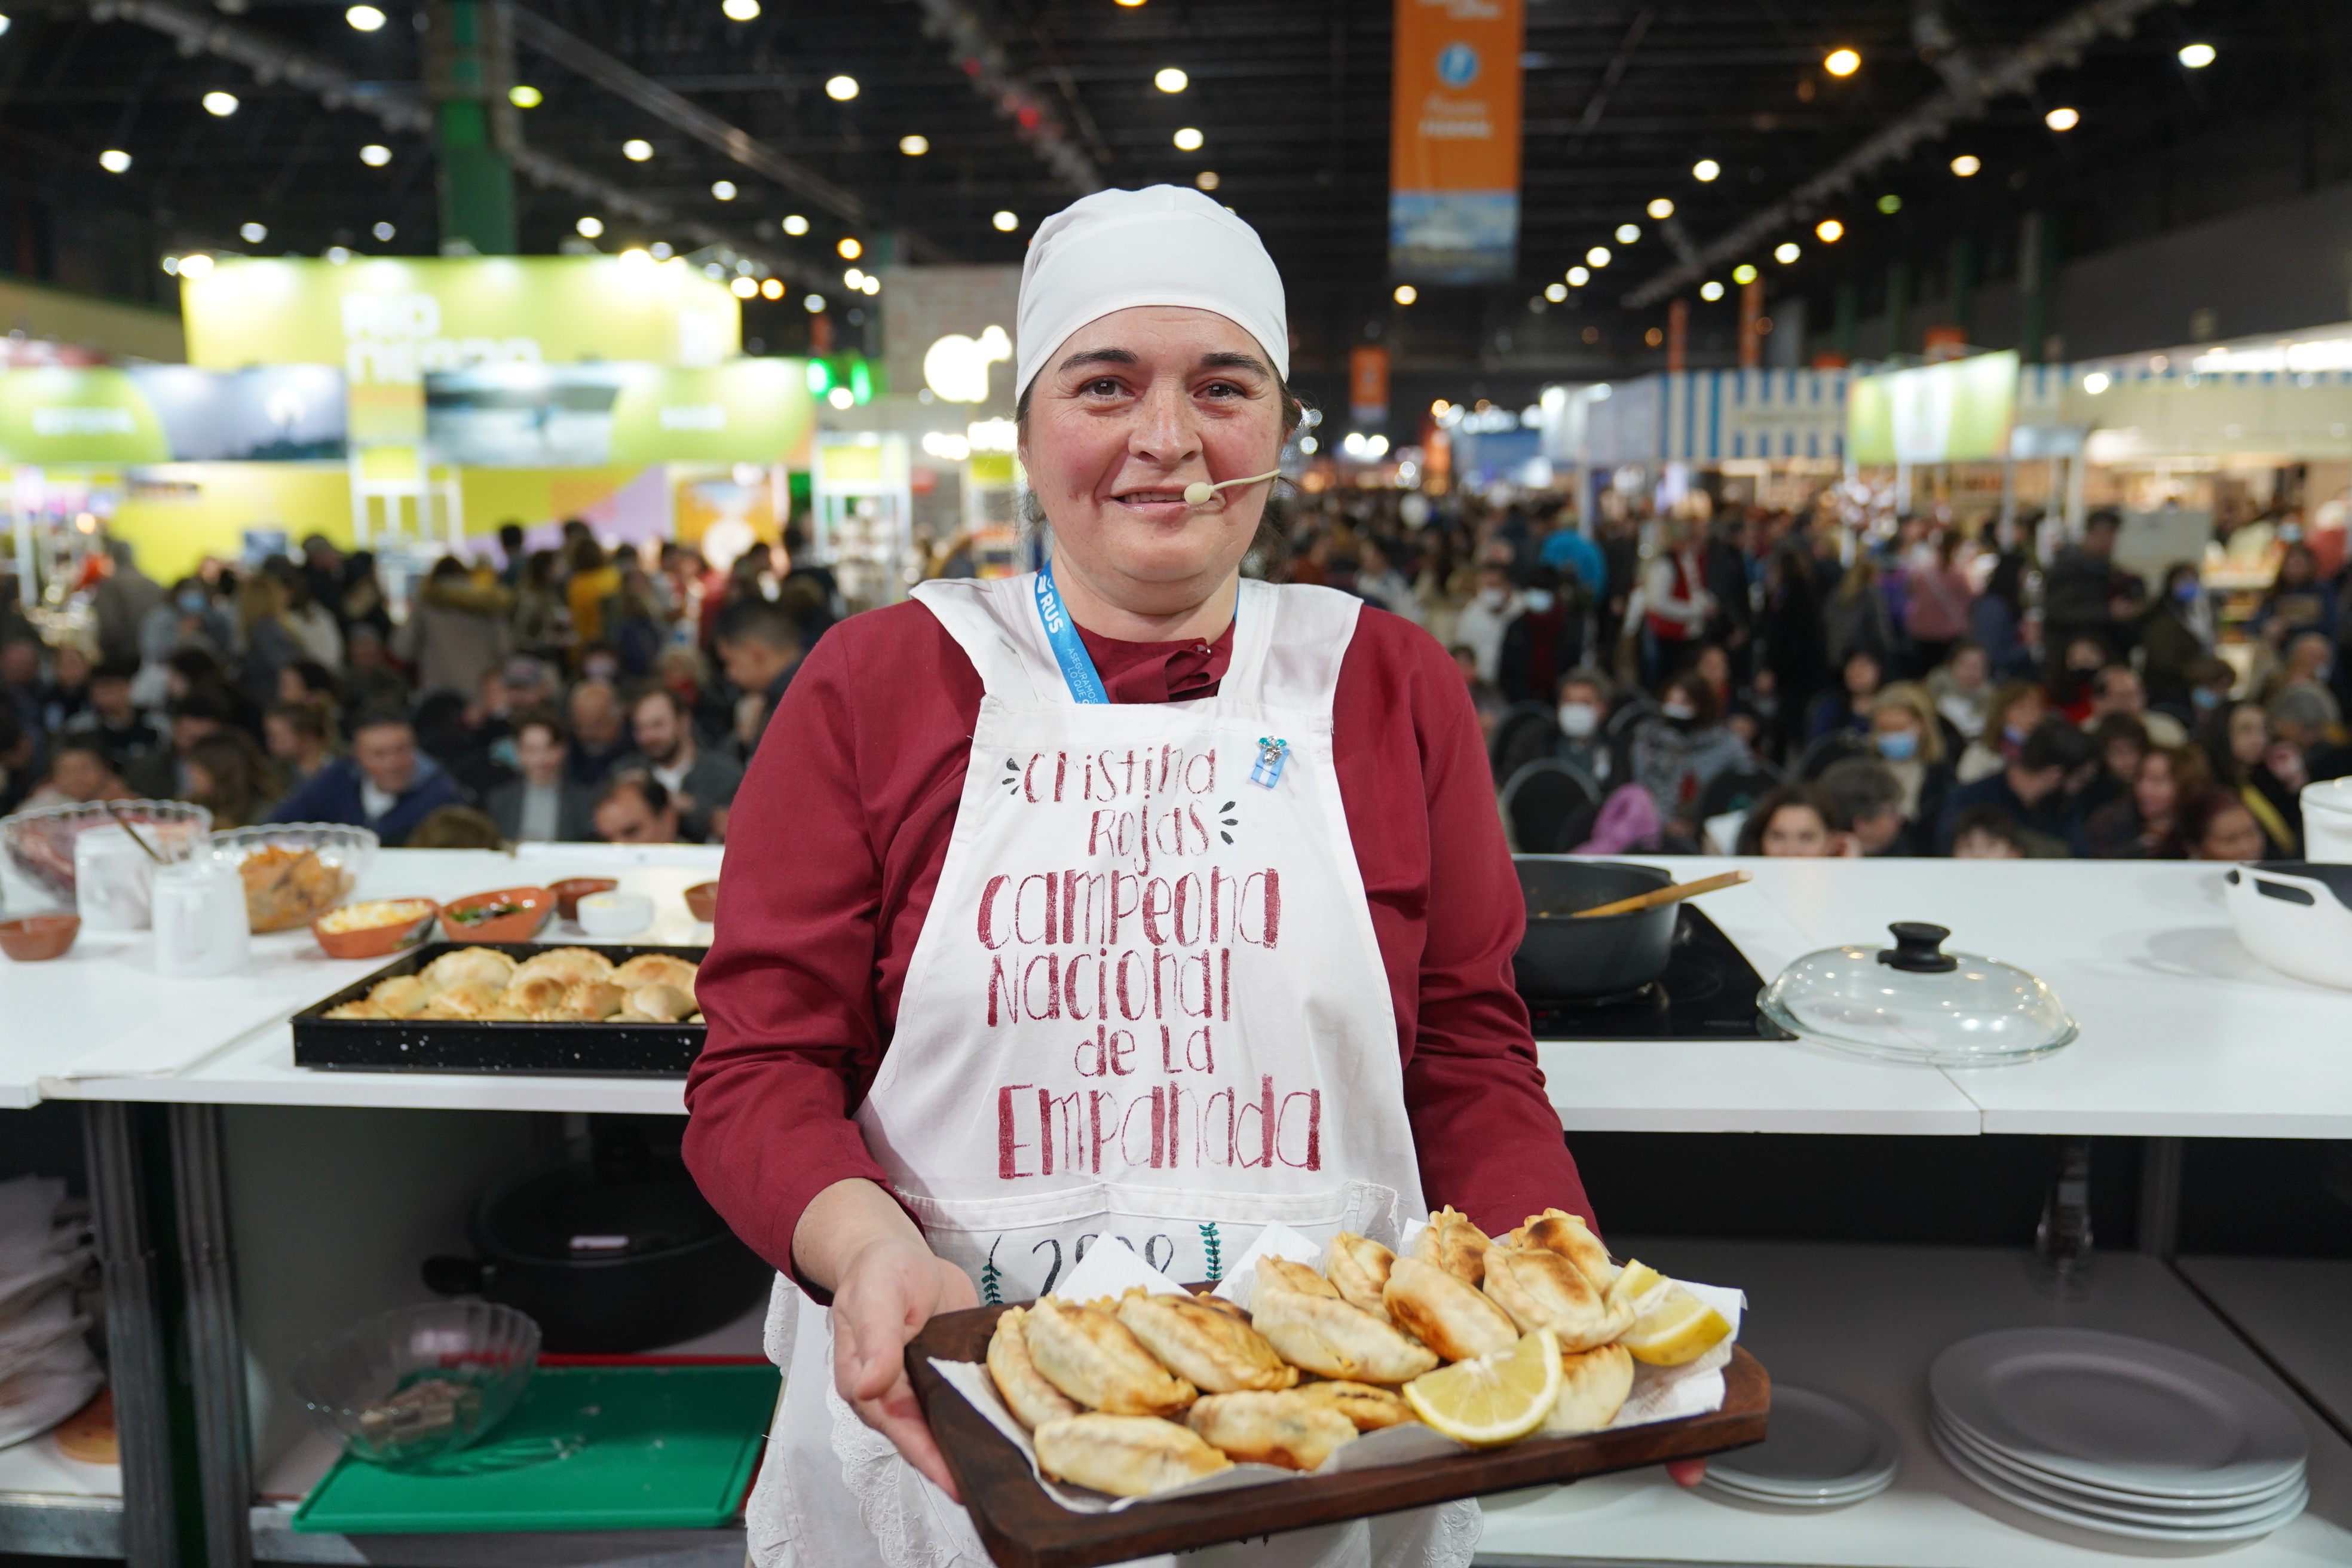 Cristina Rojas Lazarte, campeona de la fiesta nacional de la empanada, comparte su receta para replicar en esta fecha patria (Agencia Wachs)